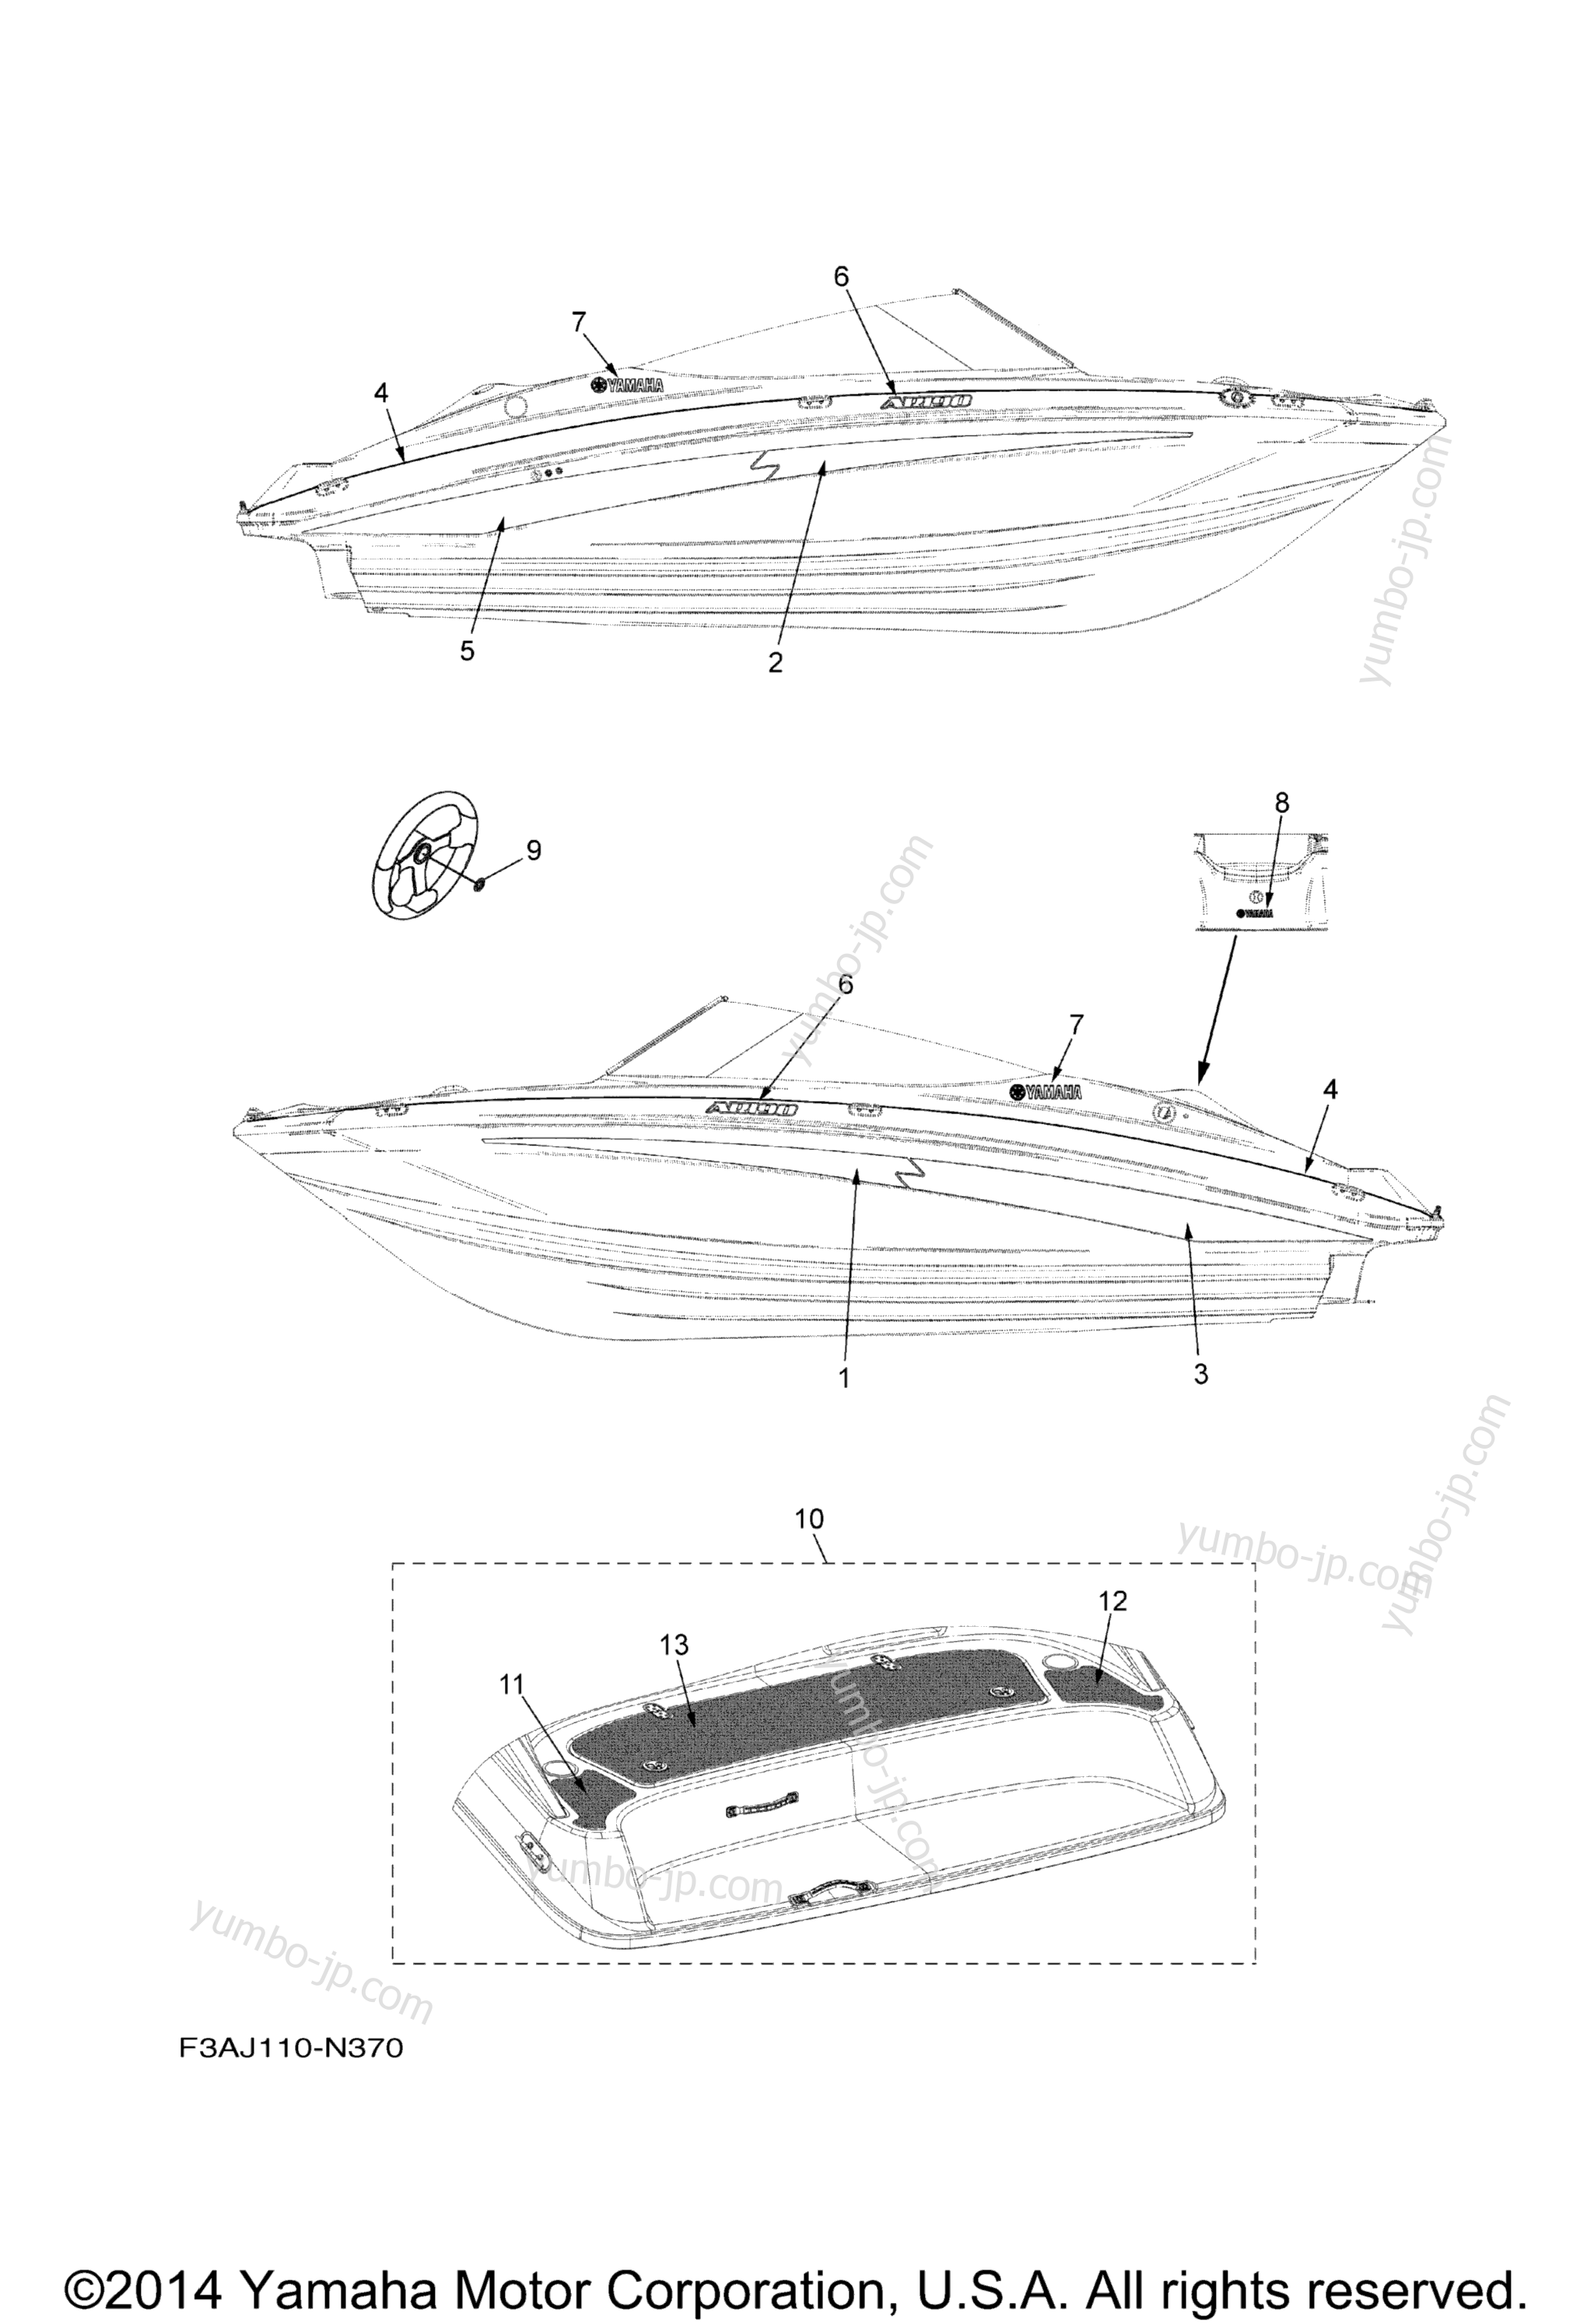 Graphics & Mats для катеров YAMAHA AR190 (RX1800BN) 2014 г.